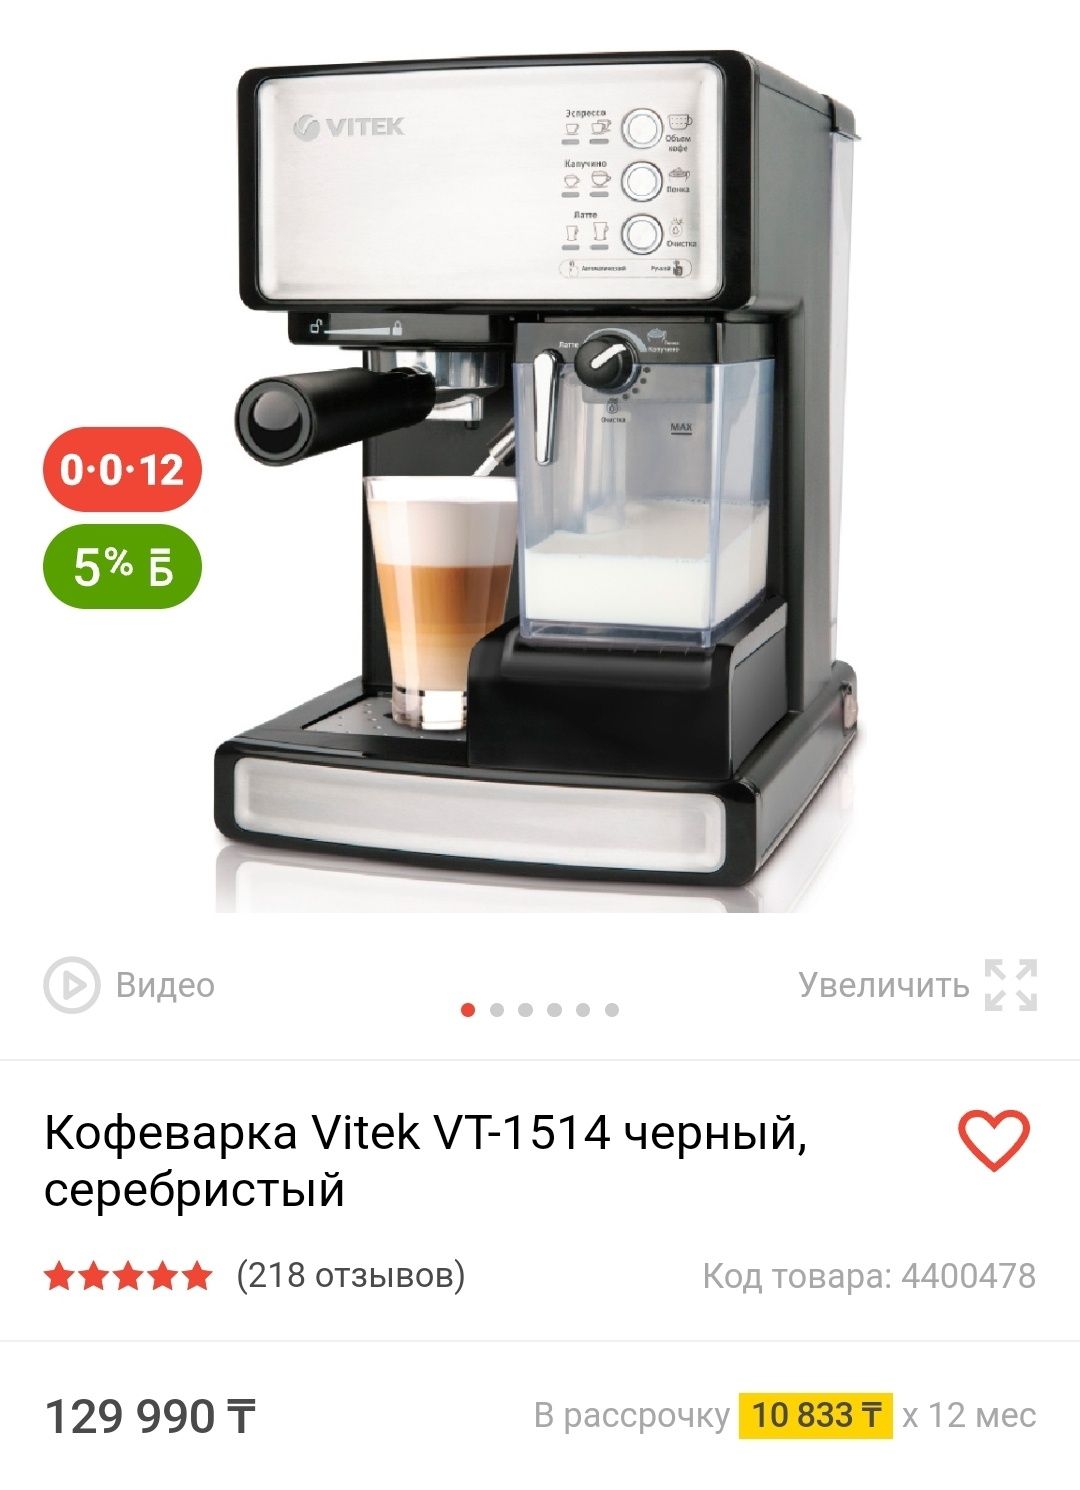 Шикарная кофемашина витек кофеварка